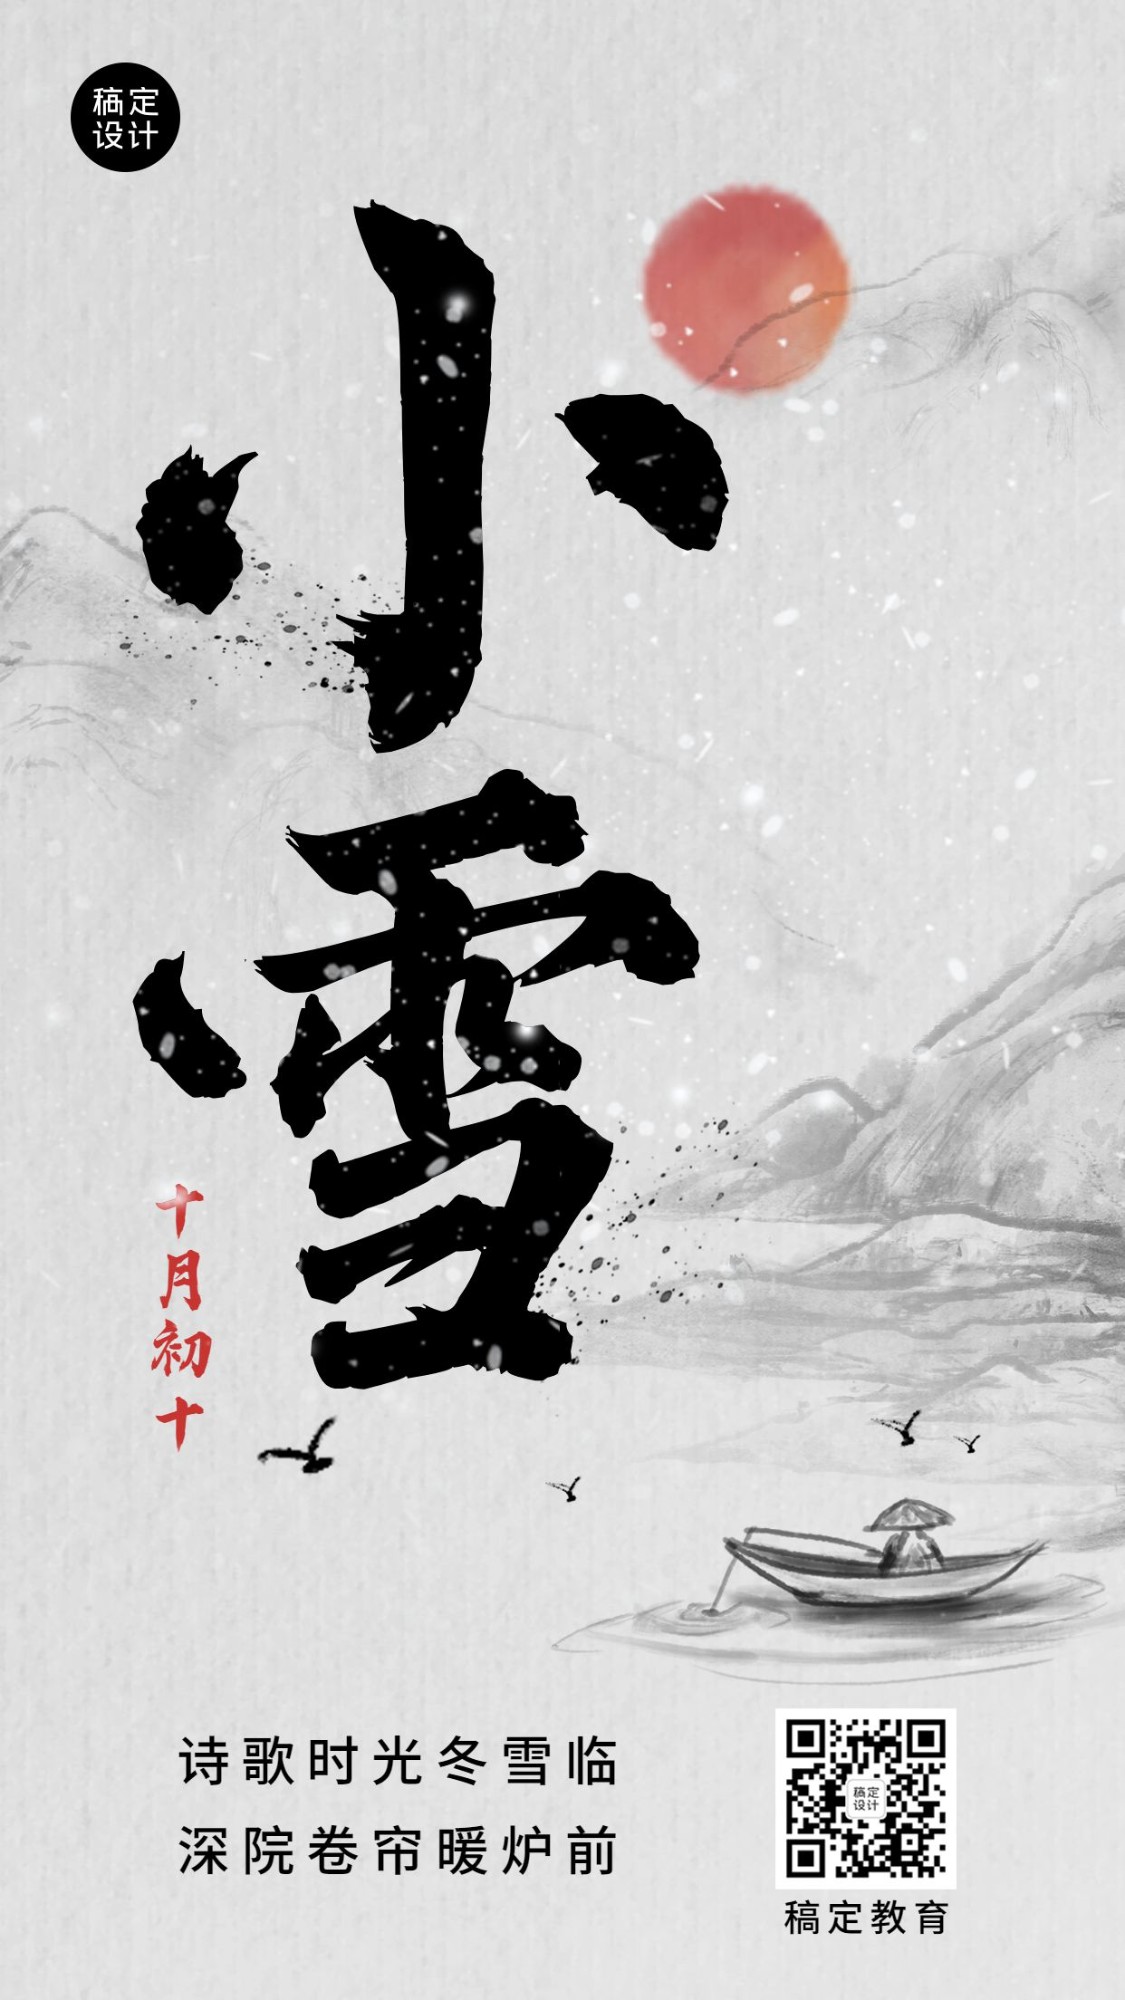 小雪祝福毛笔字中国风创意竖版海报